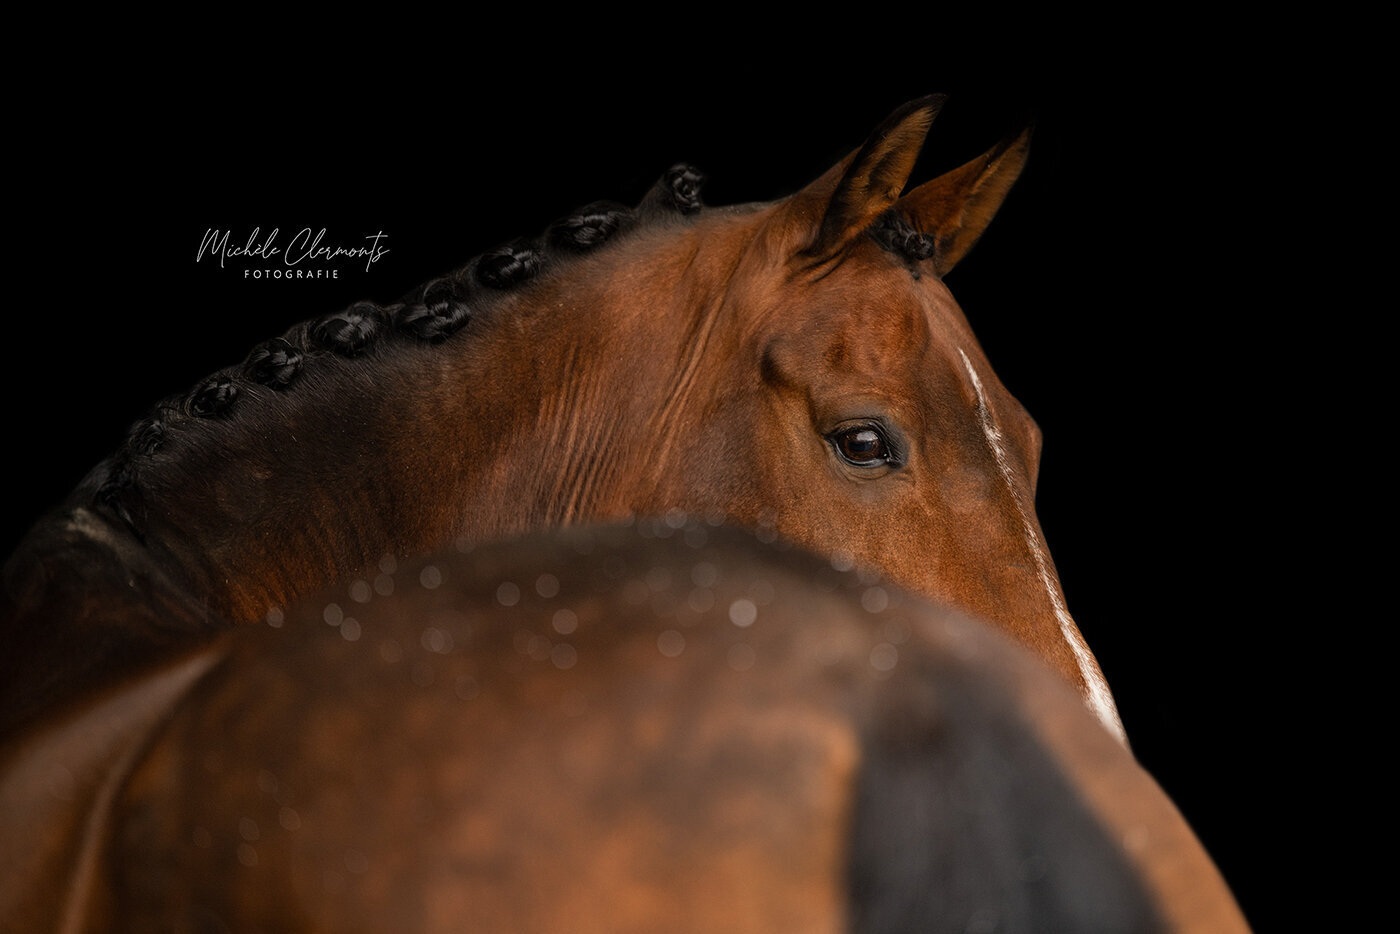 DSC_1405-3-paardenfotografie-michèle clermonts fotografie-low